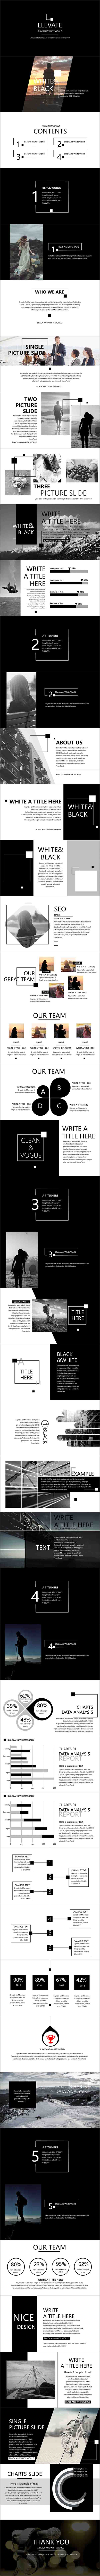 黑白简约欧美风格商务风格清新画册企业杂志风格通用ppt模